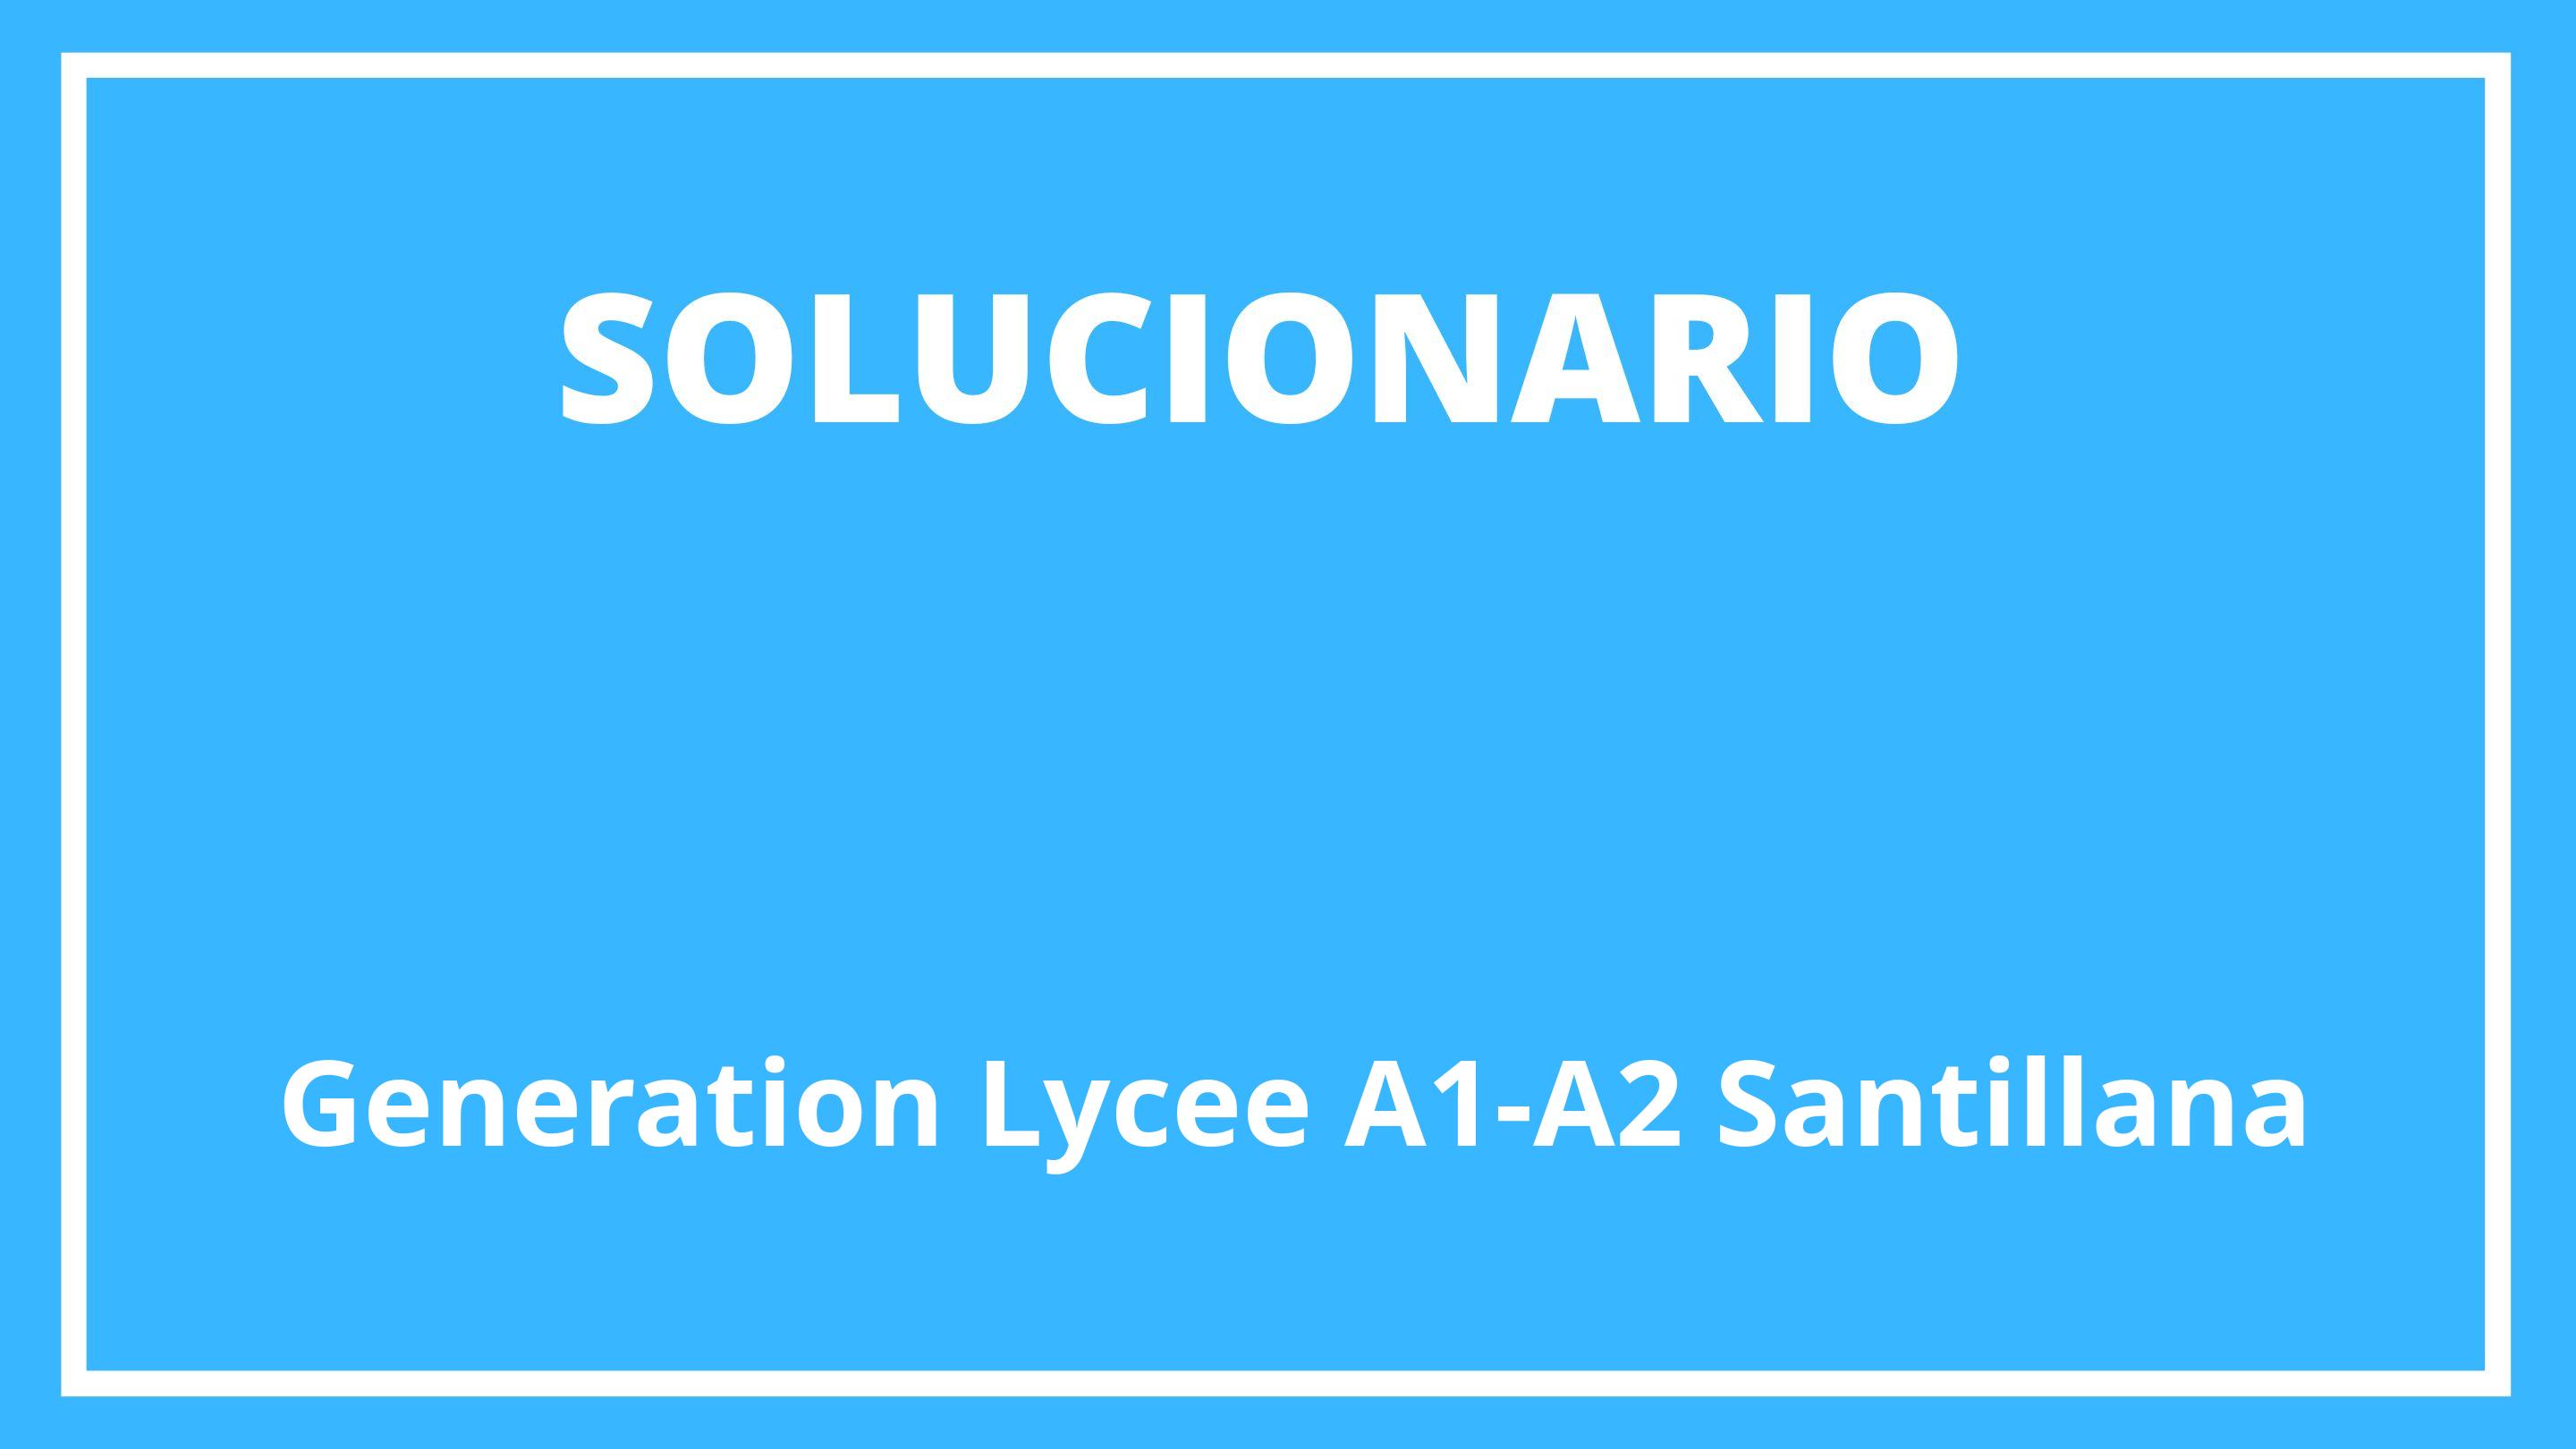 Generation Lycee A1-A2 Santillana Solucionario